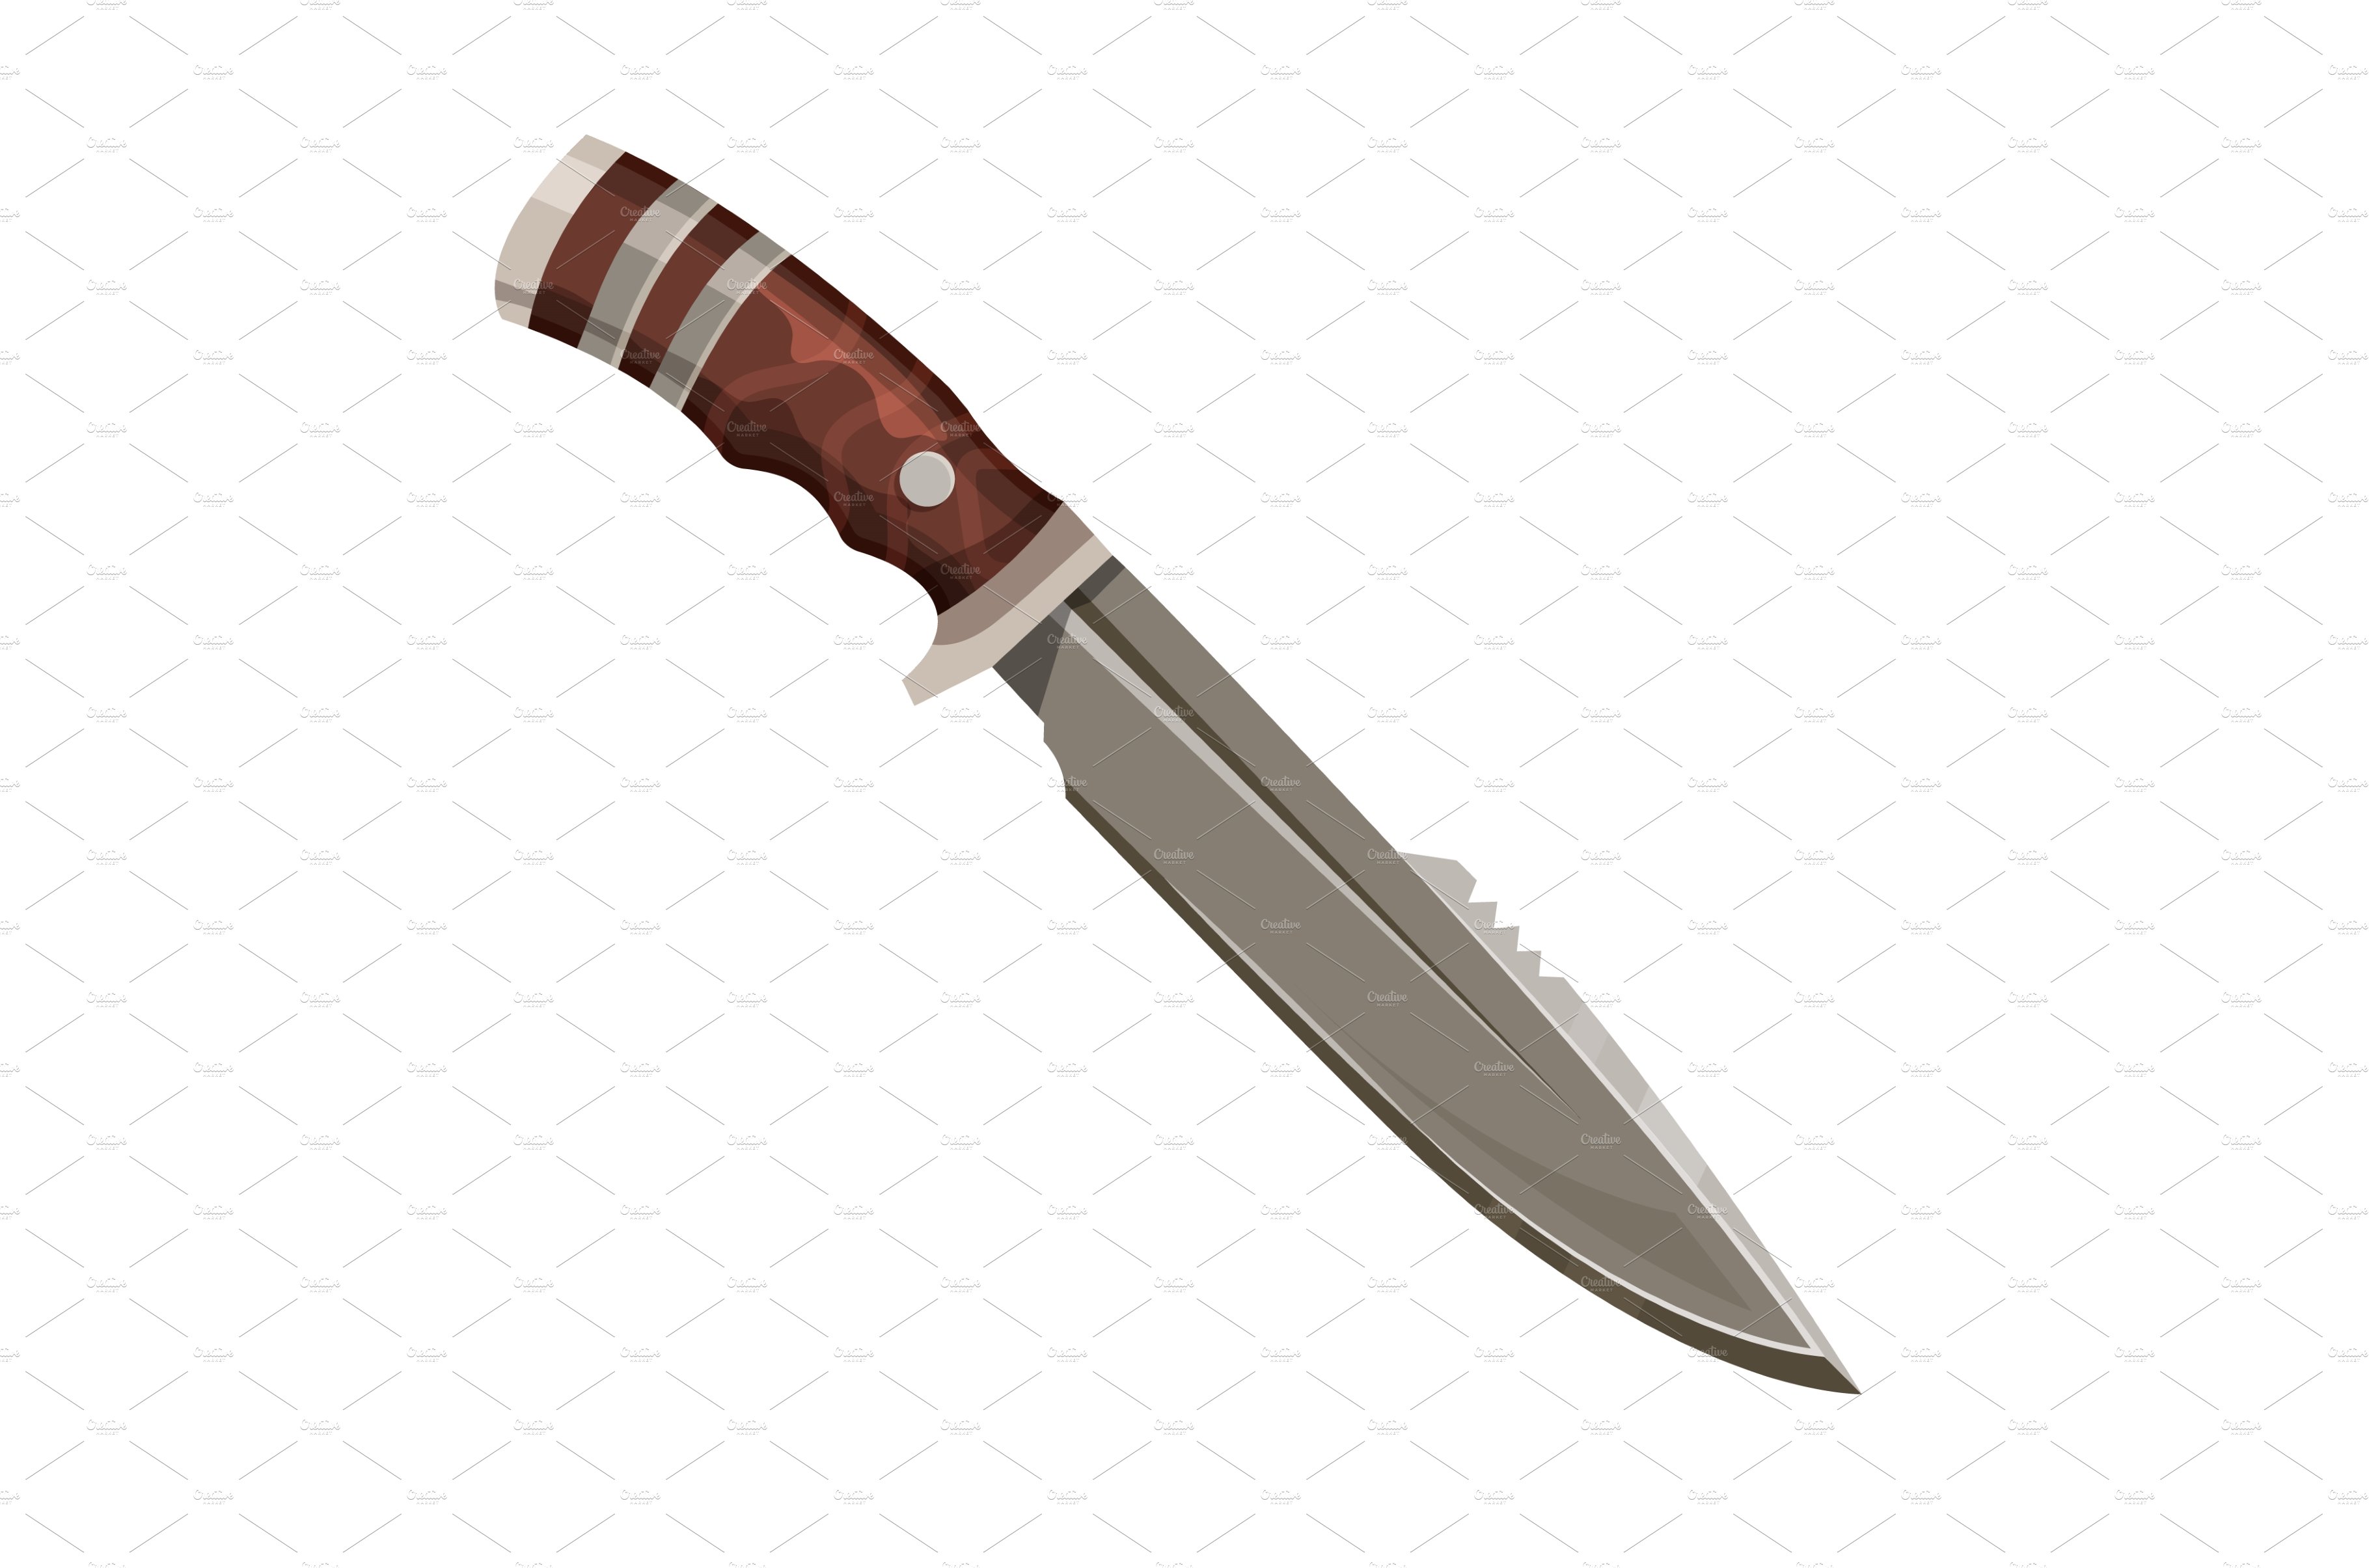 Knife blade dagger, pocketknife or cover image.